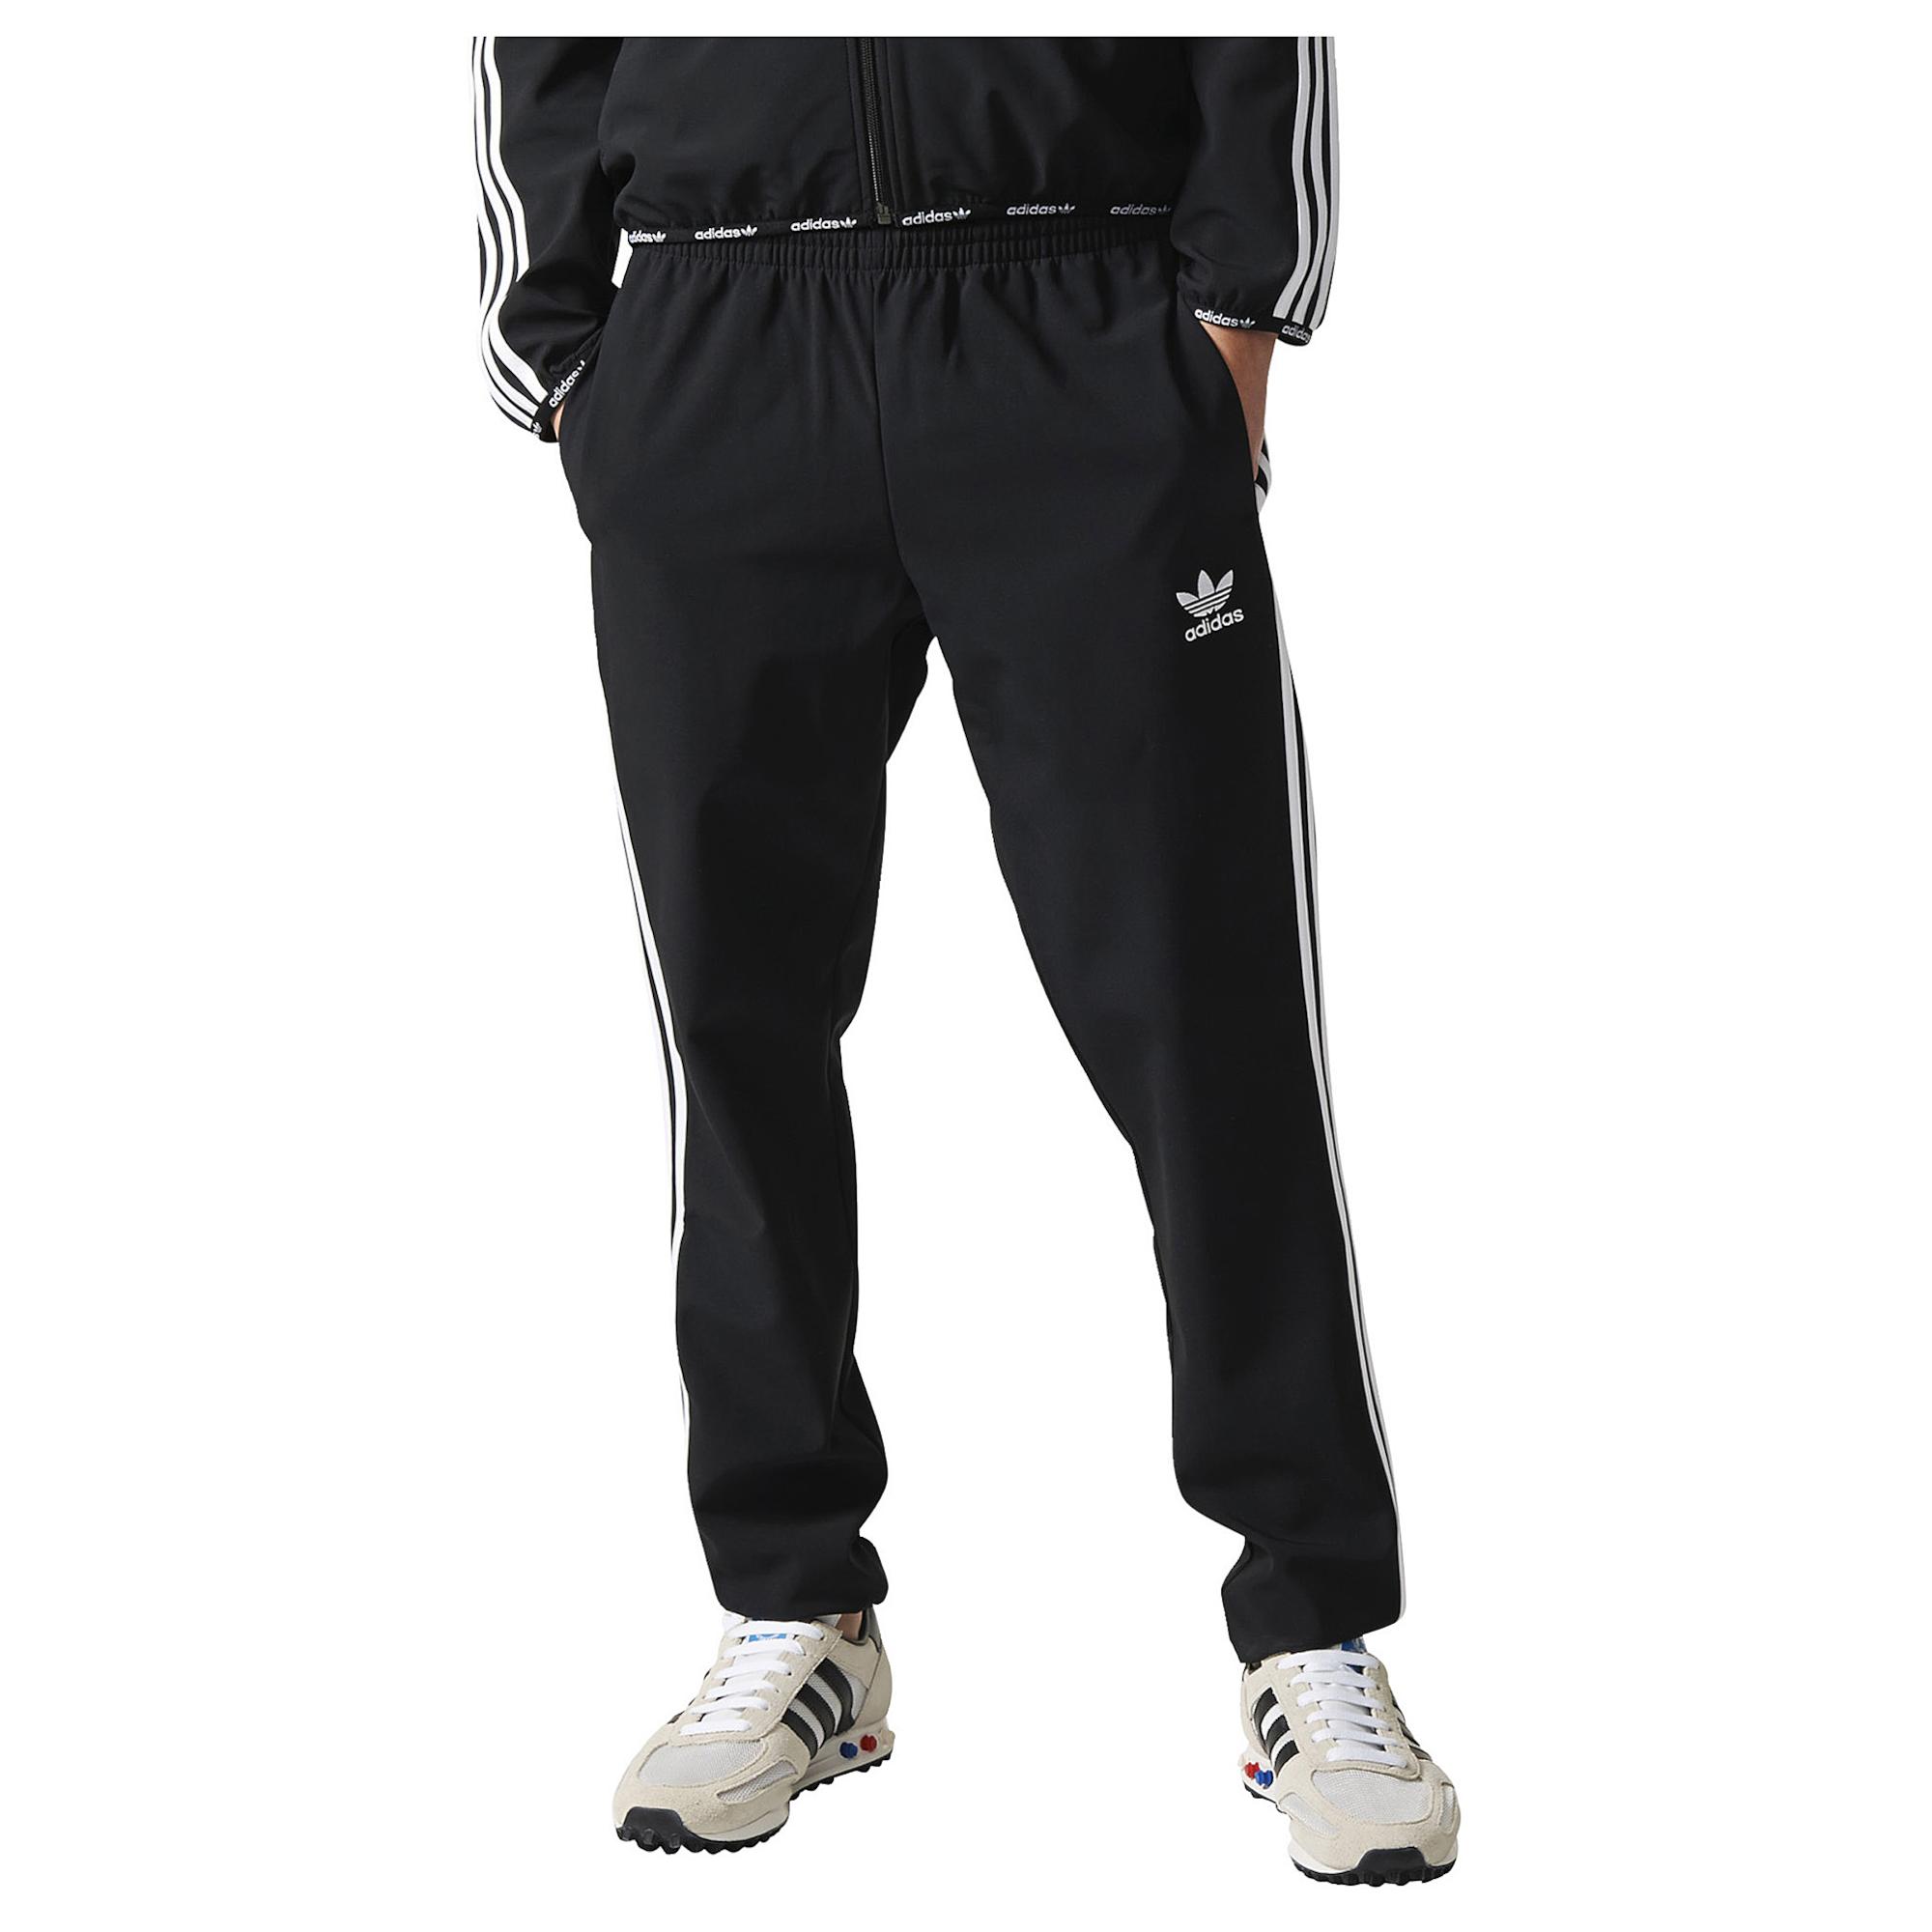 Adidas Superstar 2.0 Pants Shop Deals, 43% OFF | frontmetrics.com